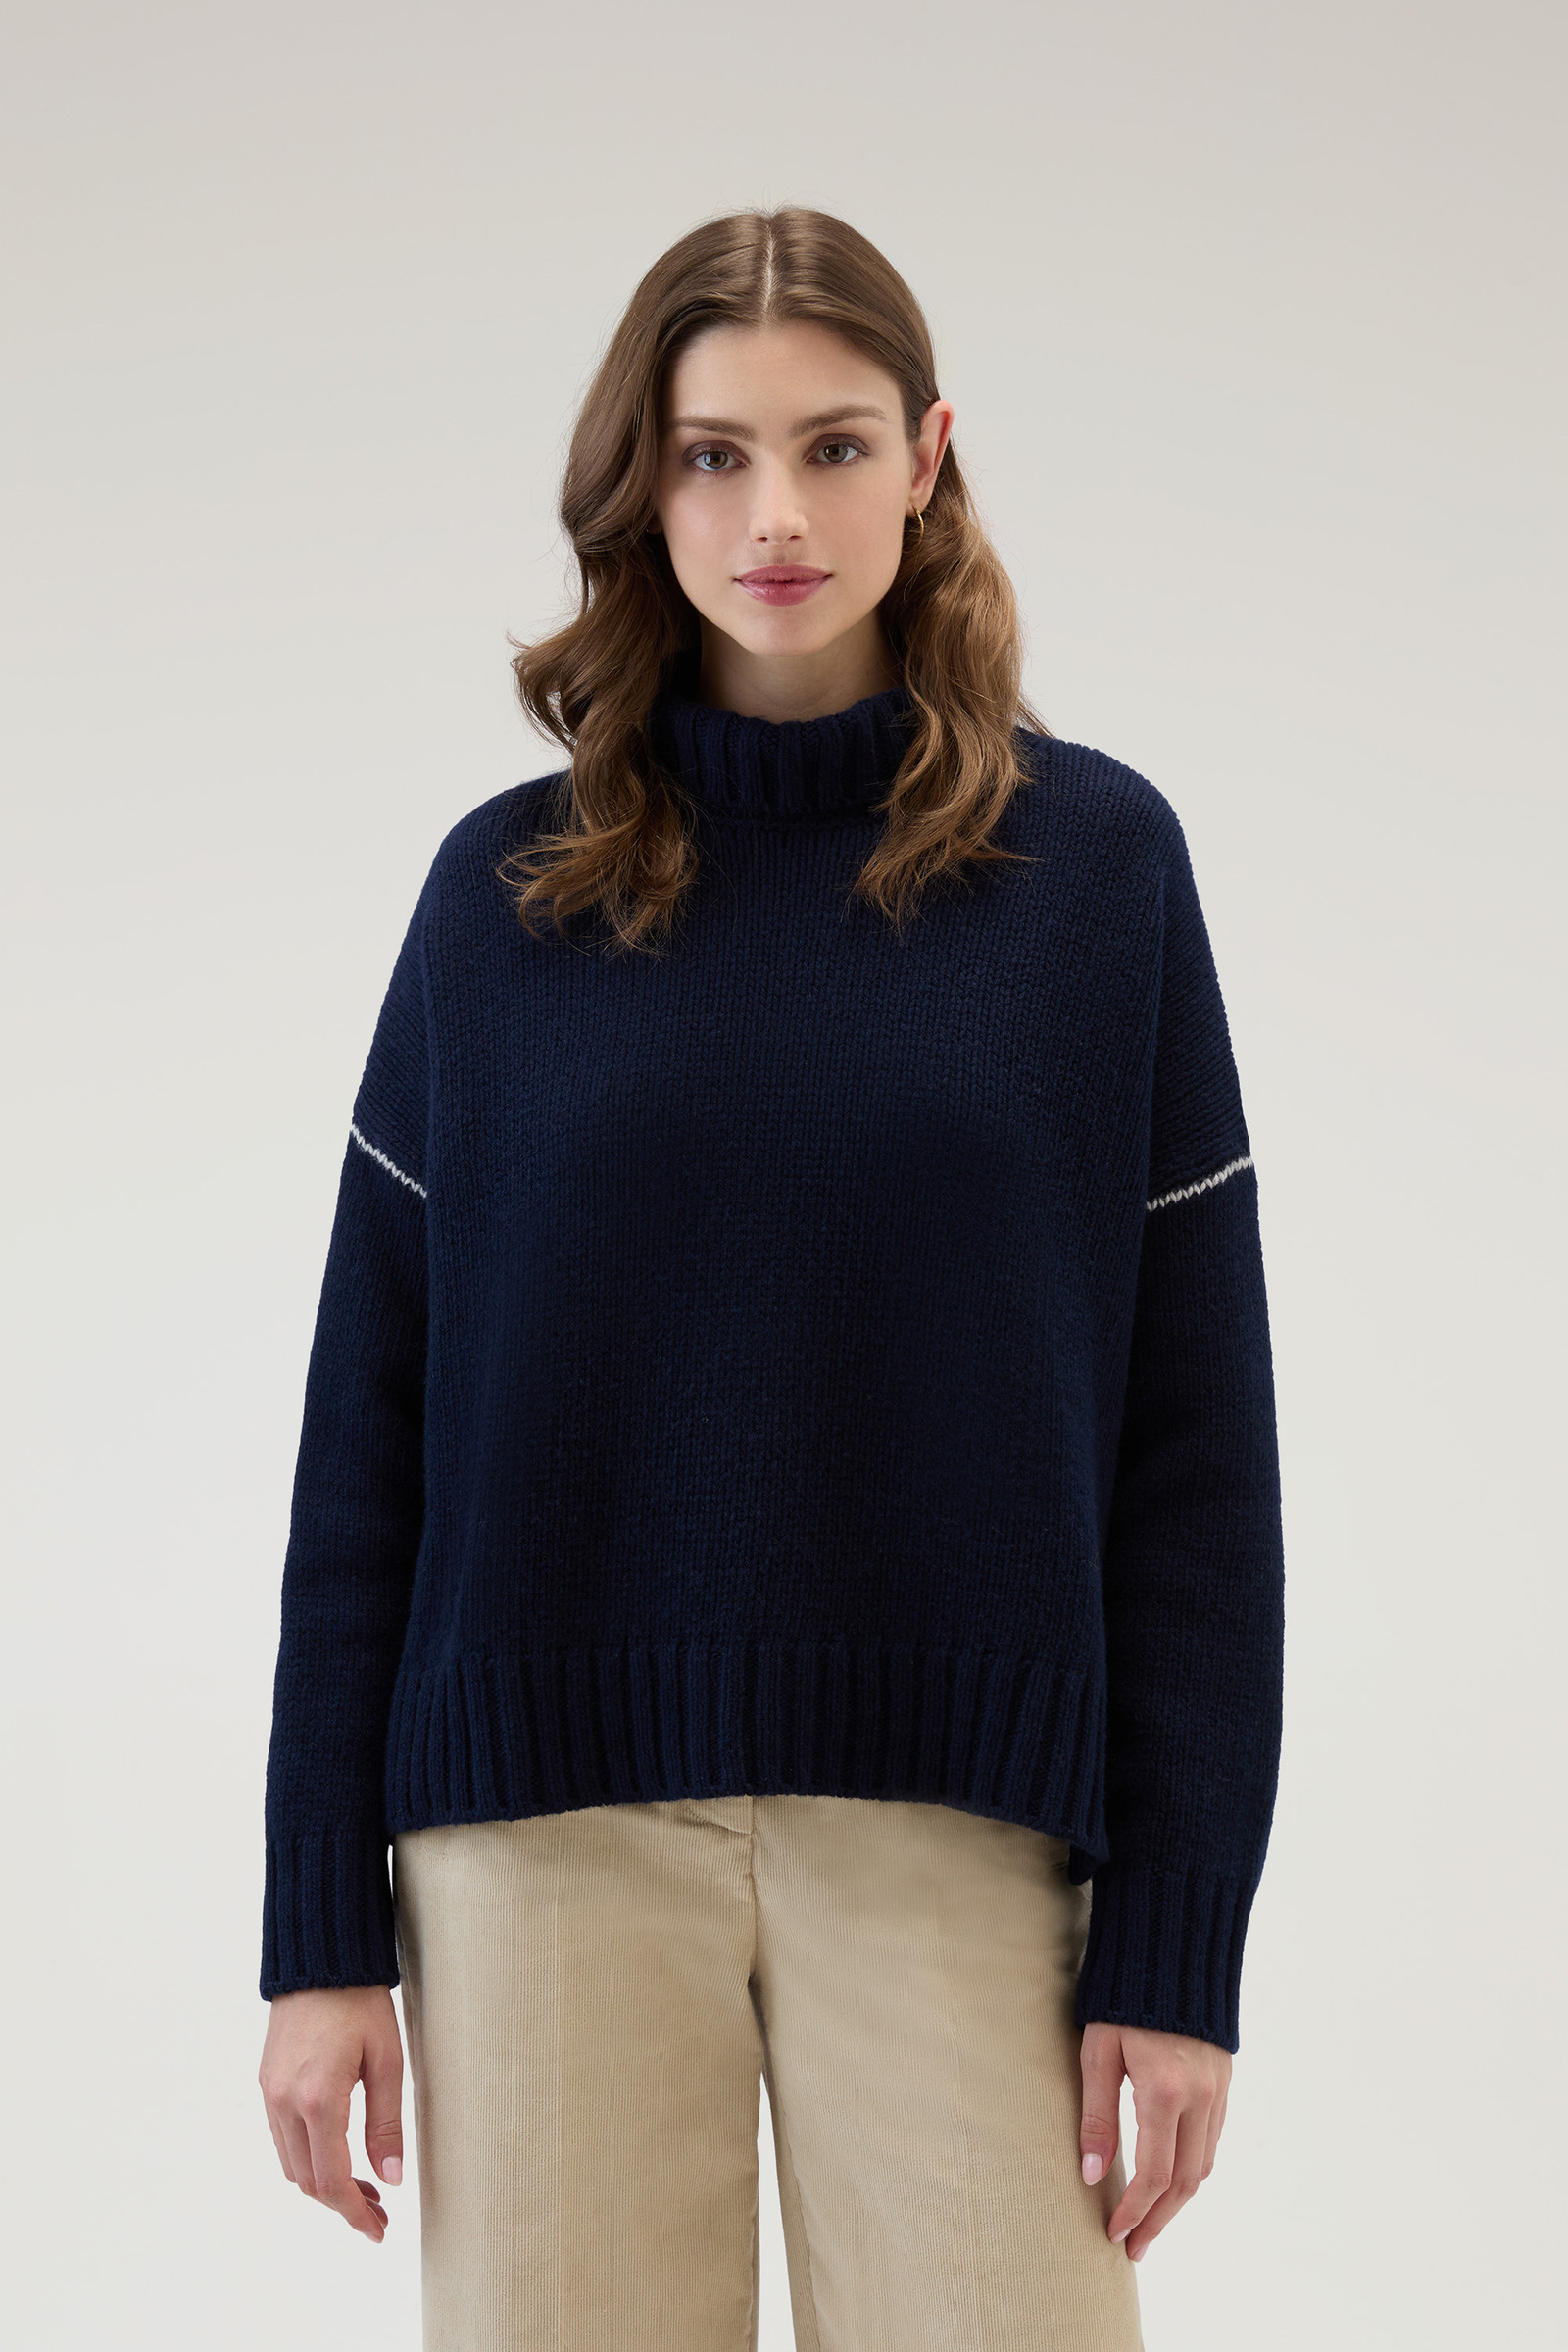 Women's Turtleneck Sweater in Pure Virgin Wool Blue | Woolrich USA